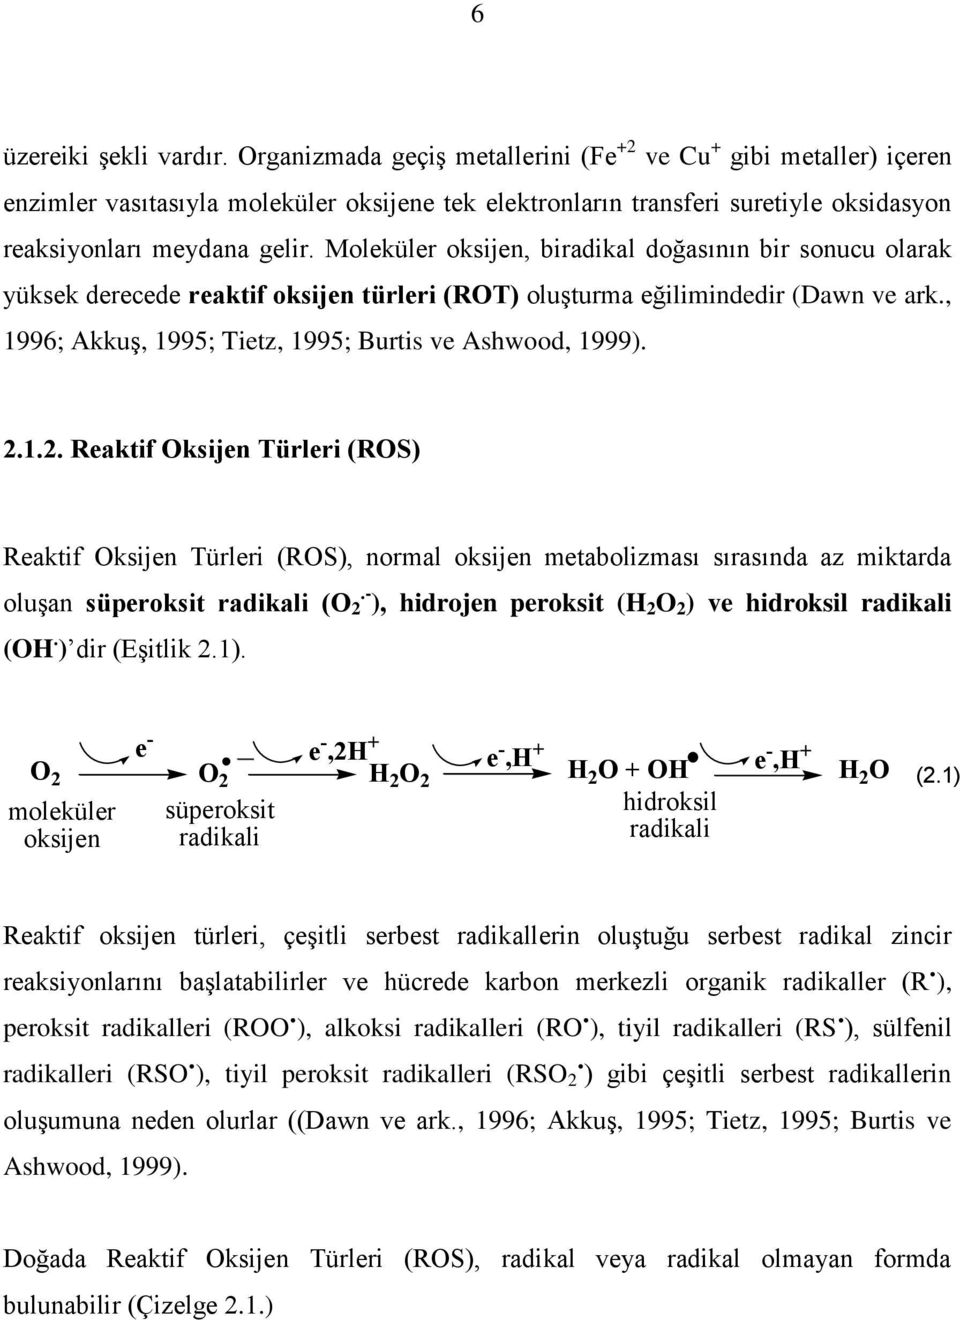 Moleküler oksijen, biradikal doğasının bir sonucu olarak yüksek derecede reaktif oksijen türleri (RT) oluşturma eğilimindedir (Dawn ve ark., 1996; Akkuş, 1995; Tietz, 1995; Burtis ve Ashwood, 1999).